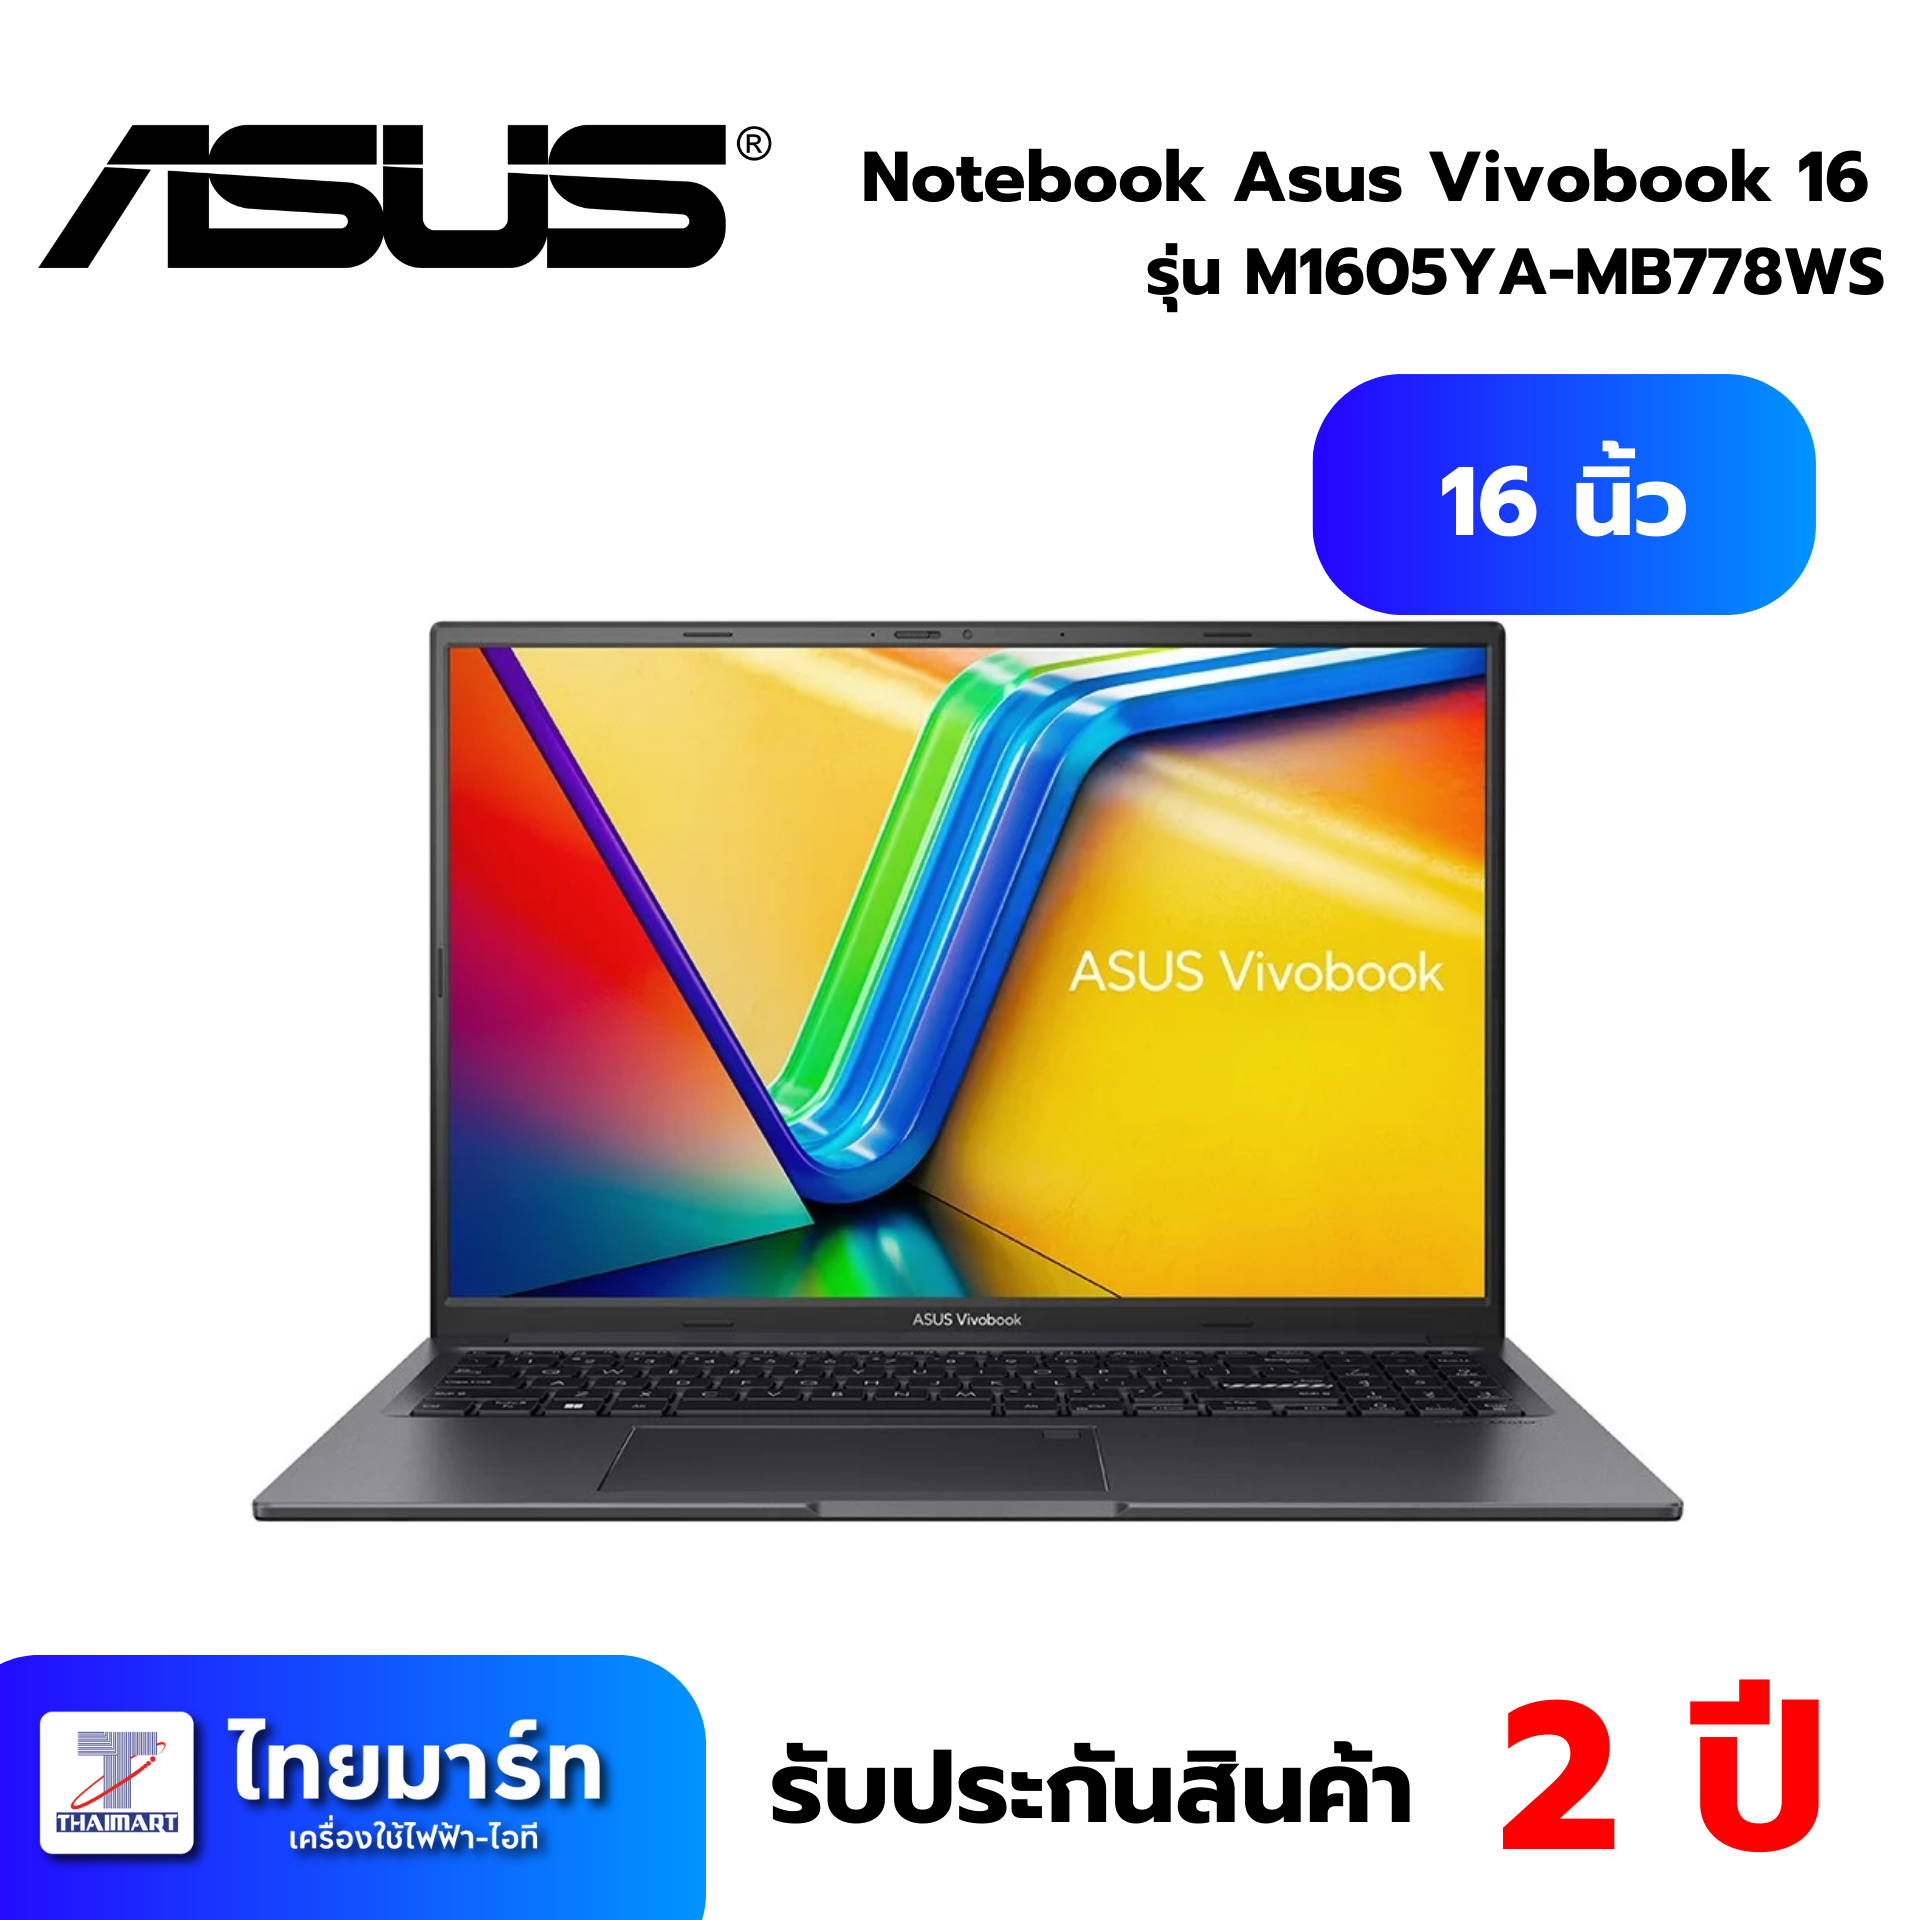 Notebook Asus Vivobook 16 M1605YA-MB778WS